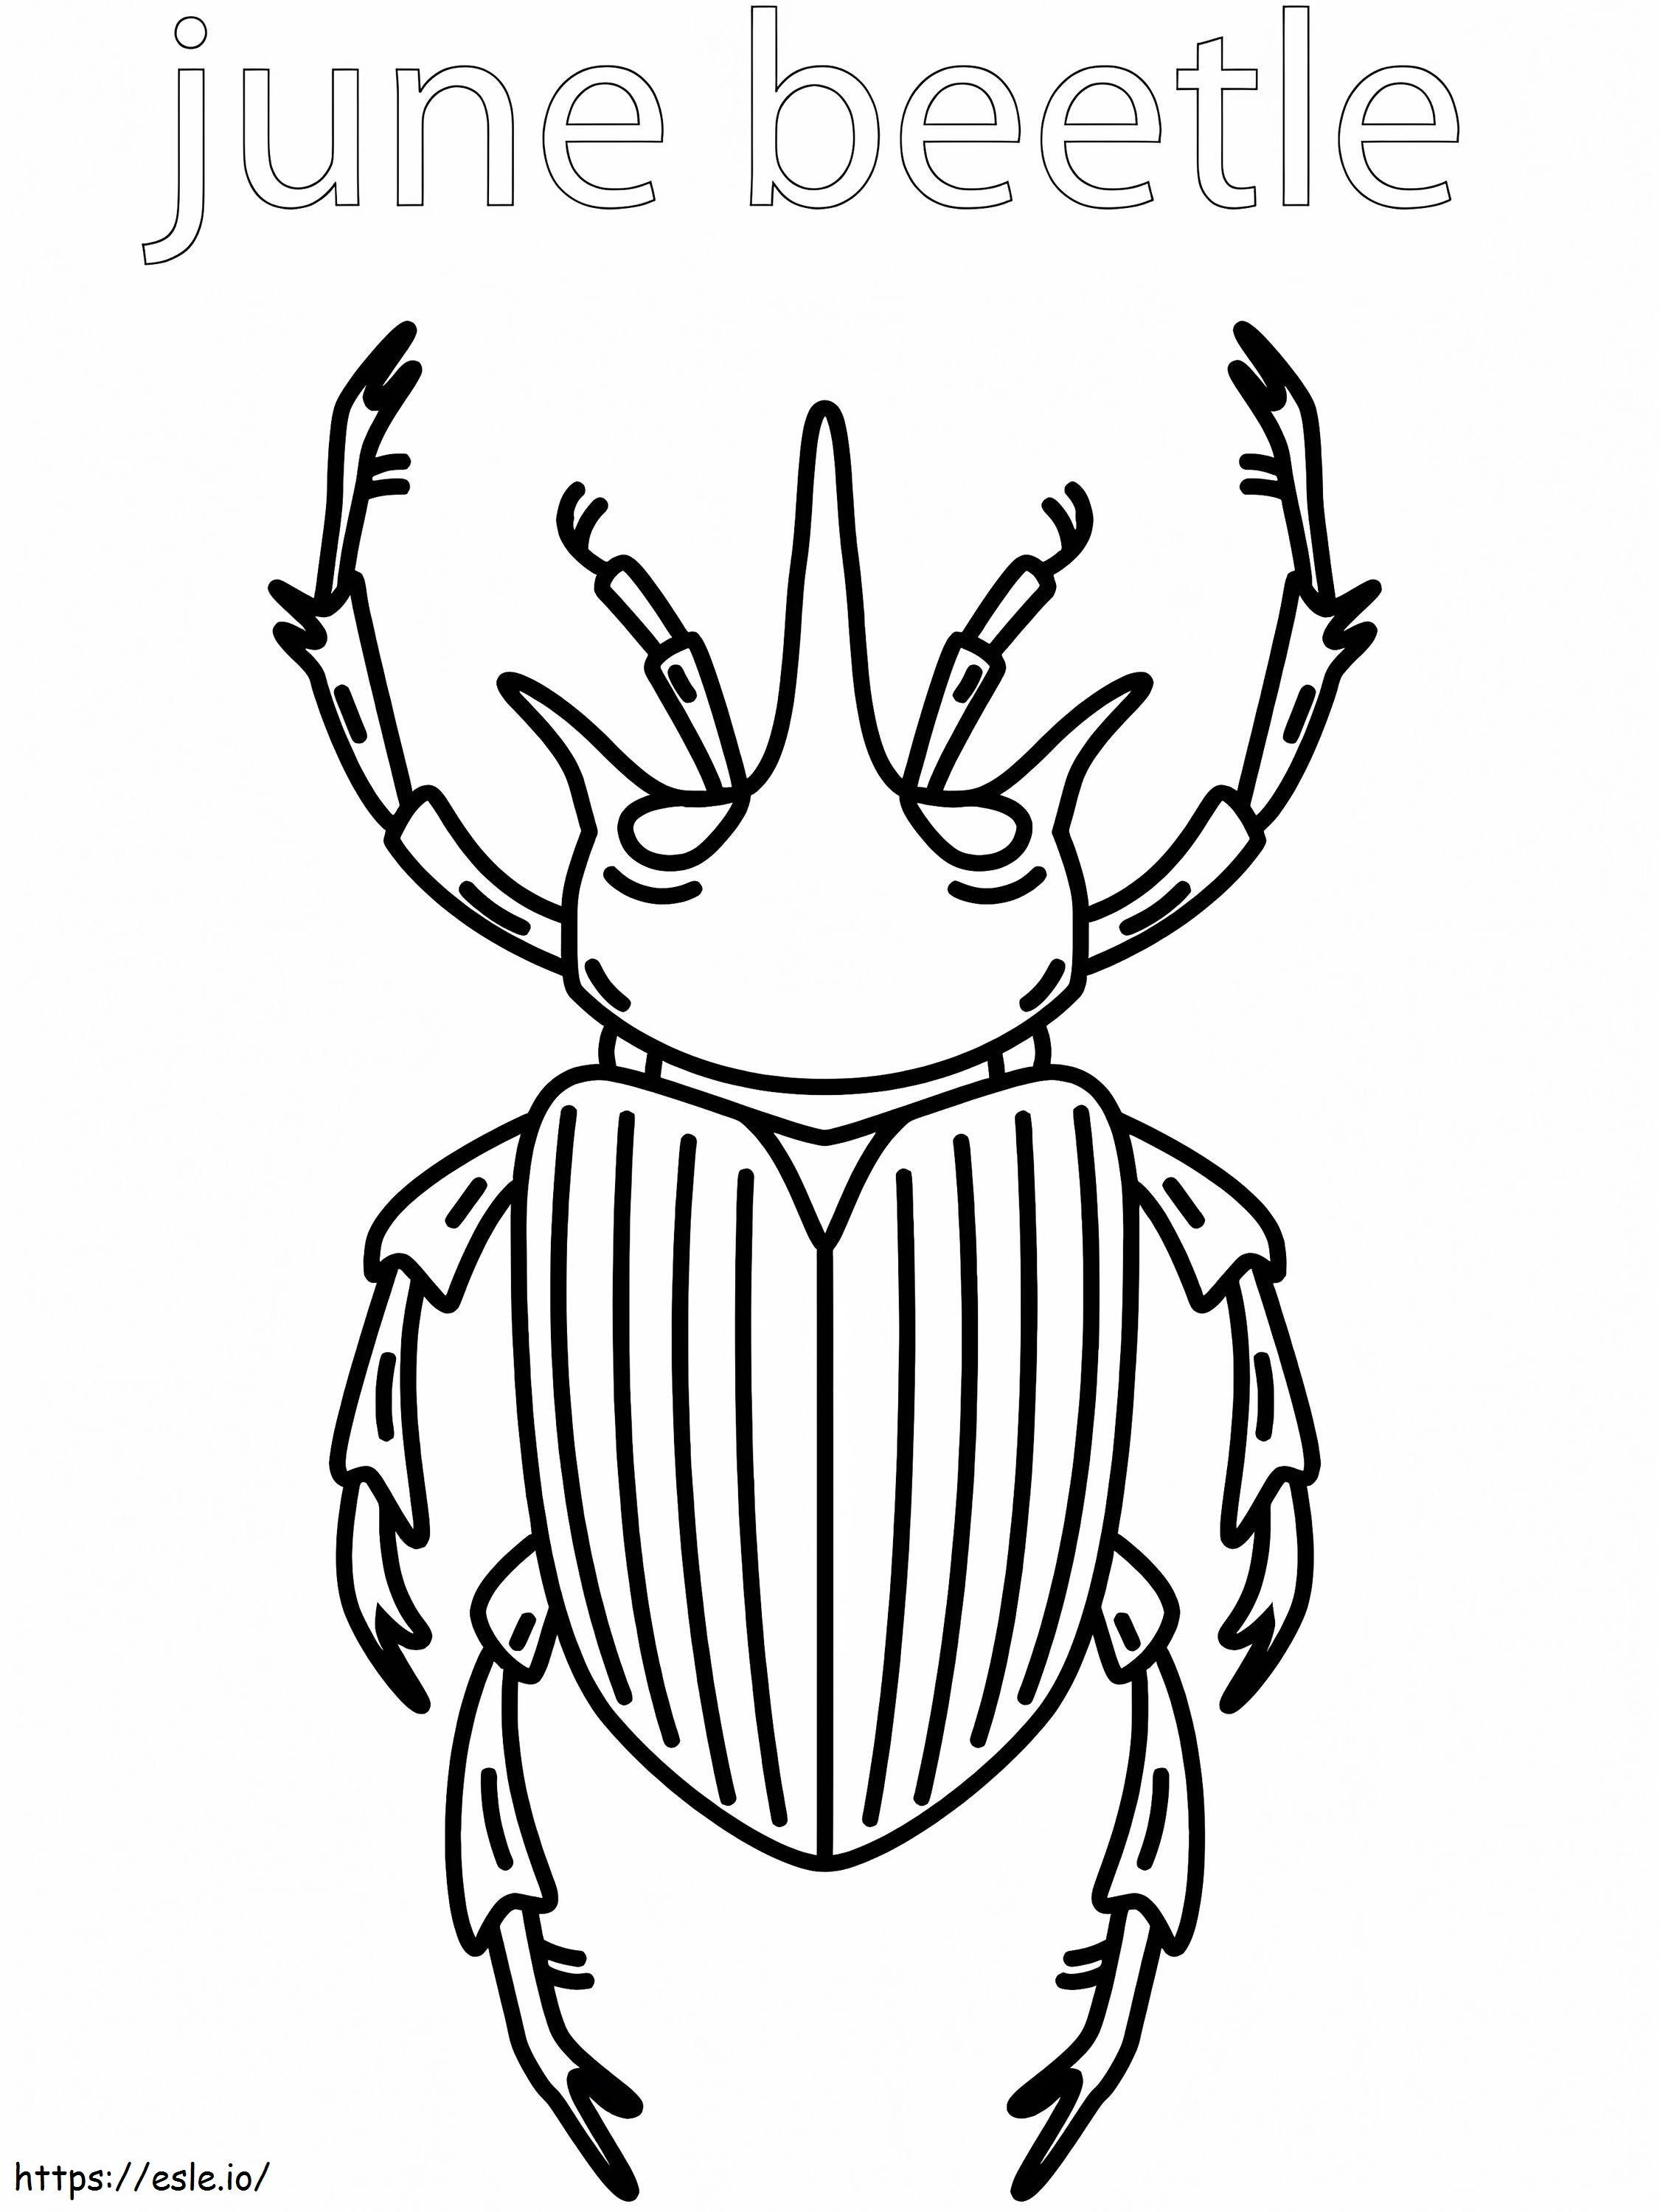 June Beetle de colorat